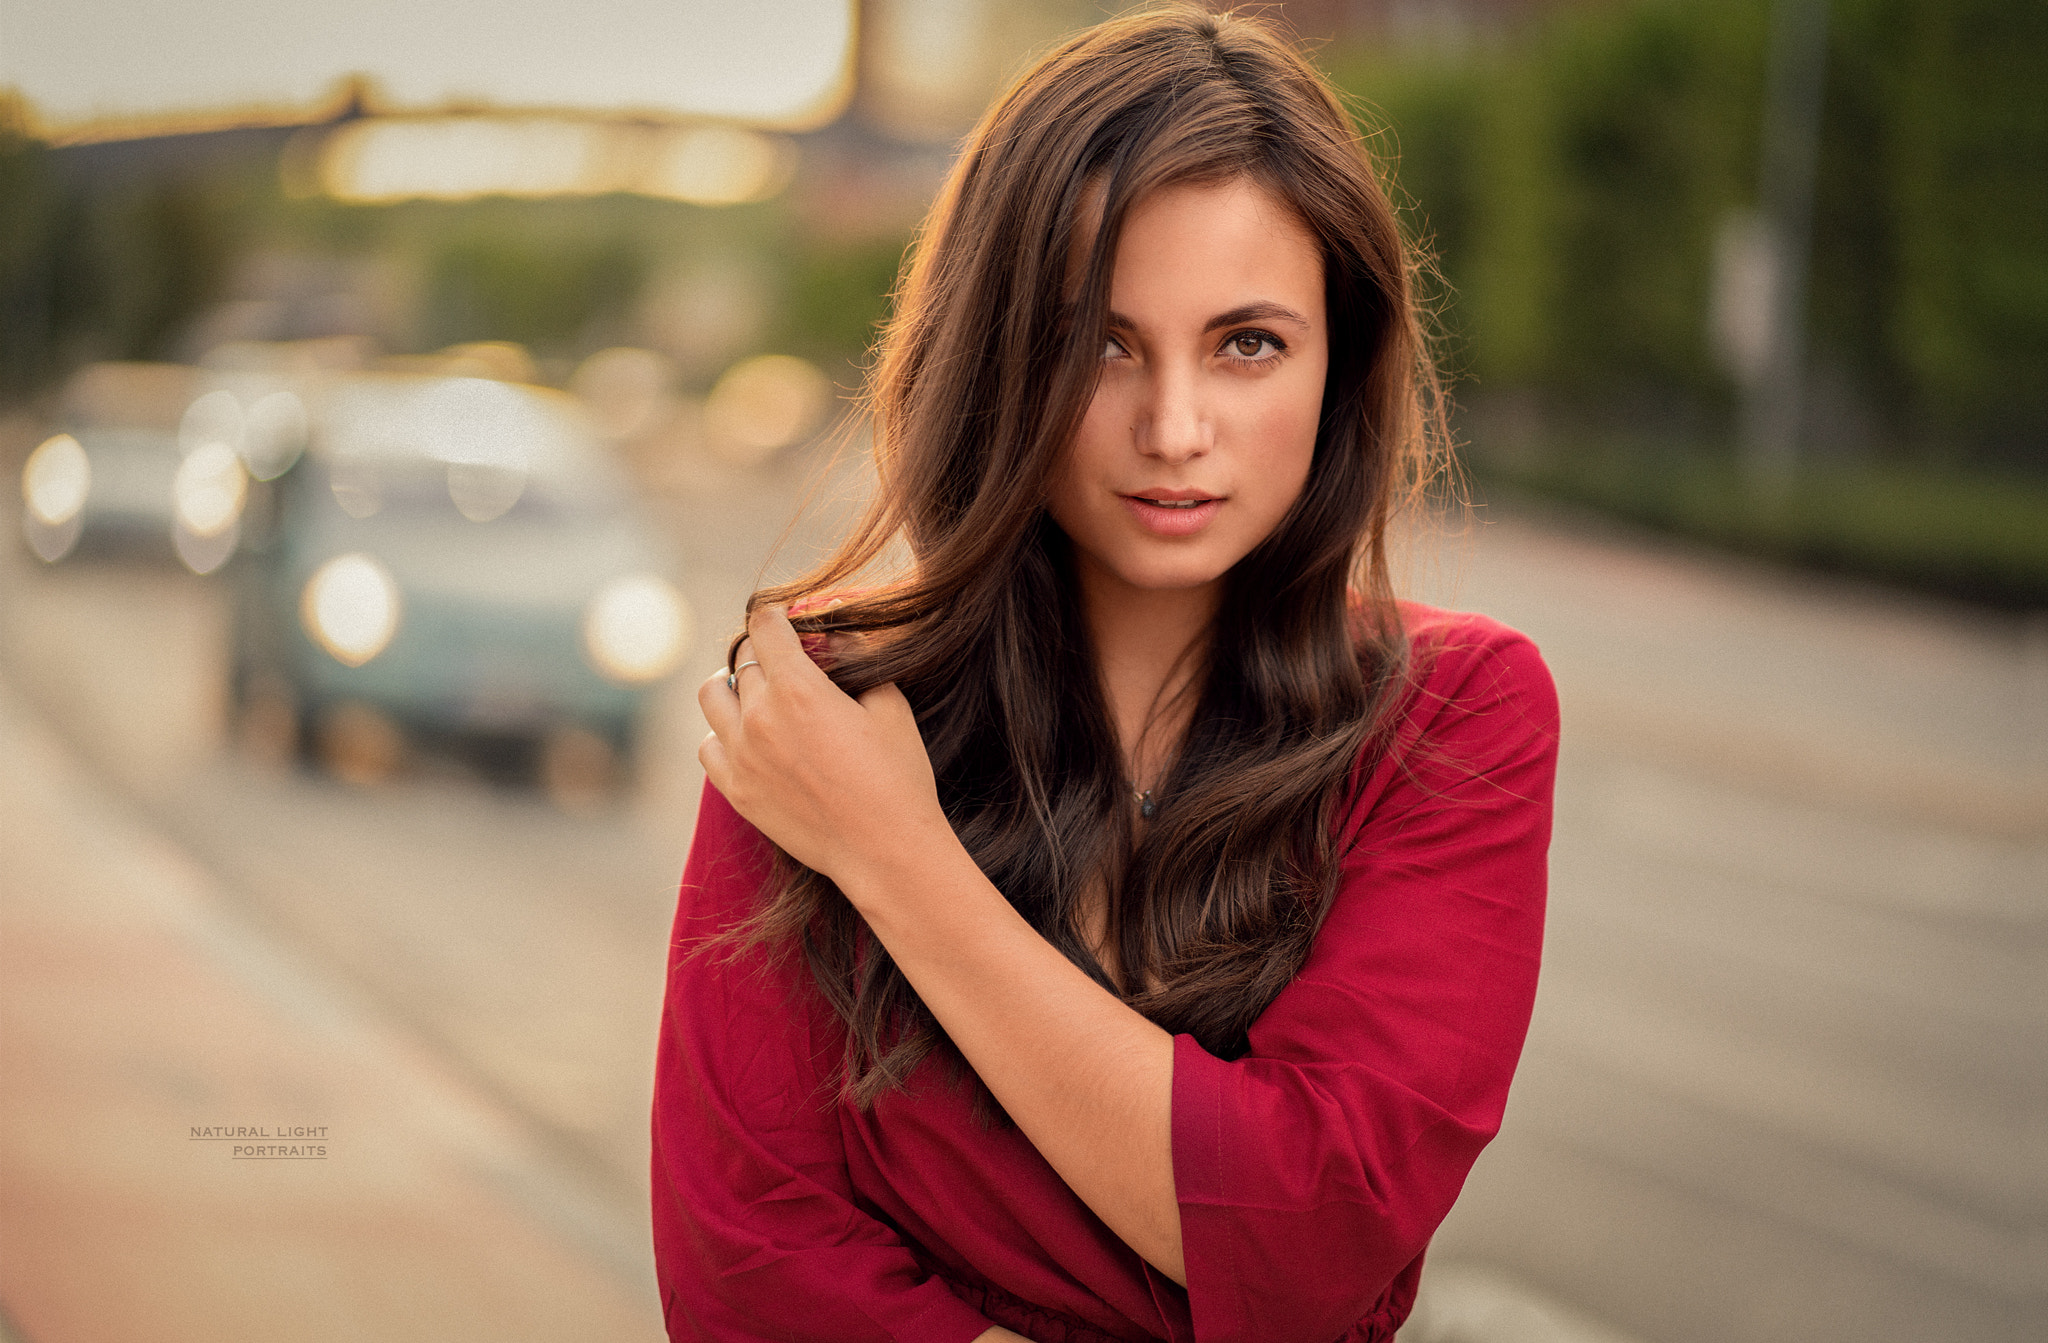 Women Face Portrait Women Outdoors Car Depth Of Field Brunette Red Tops Hands In Hair Robert Chrenka 2048x1343